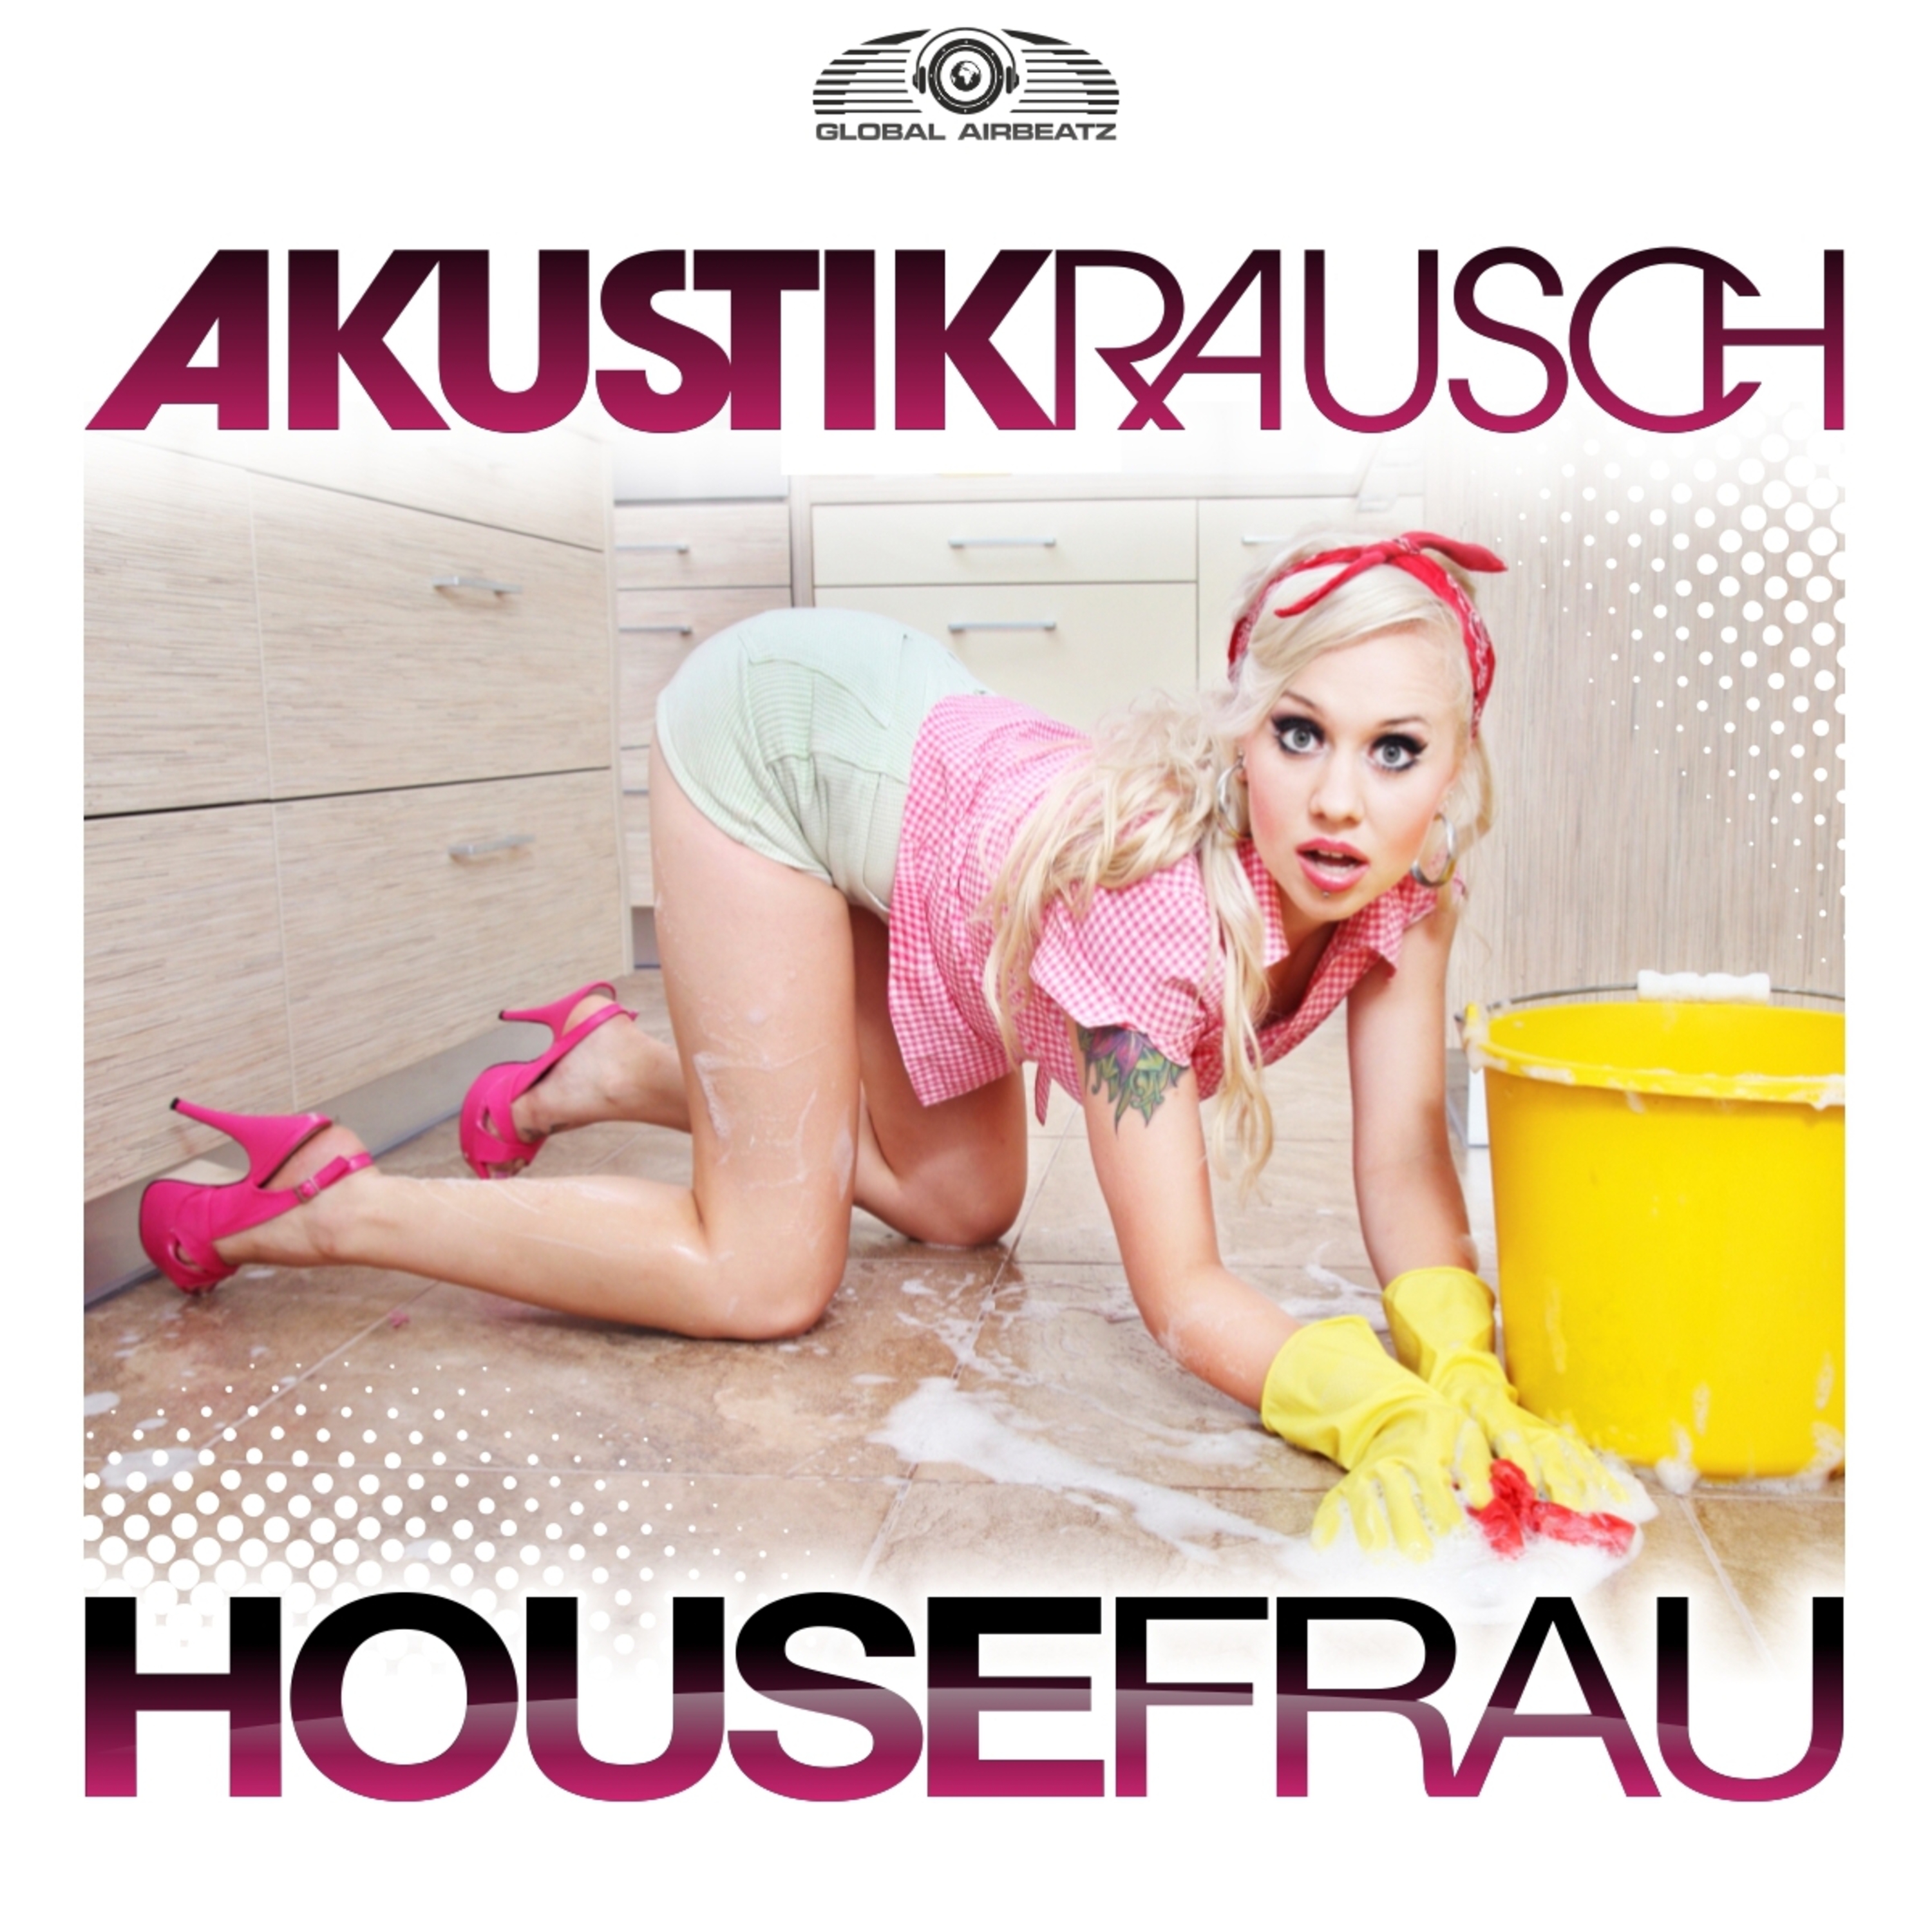 Housefrau (G4bby feat. BazzBoyz Edit)